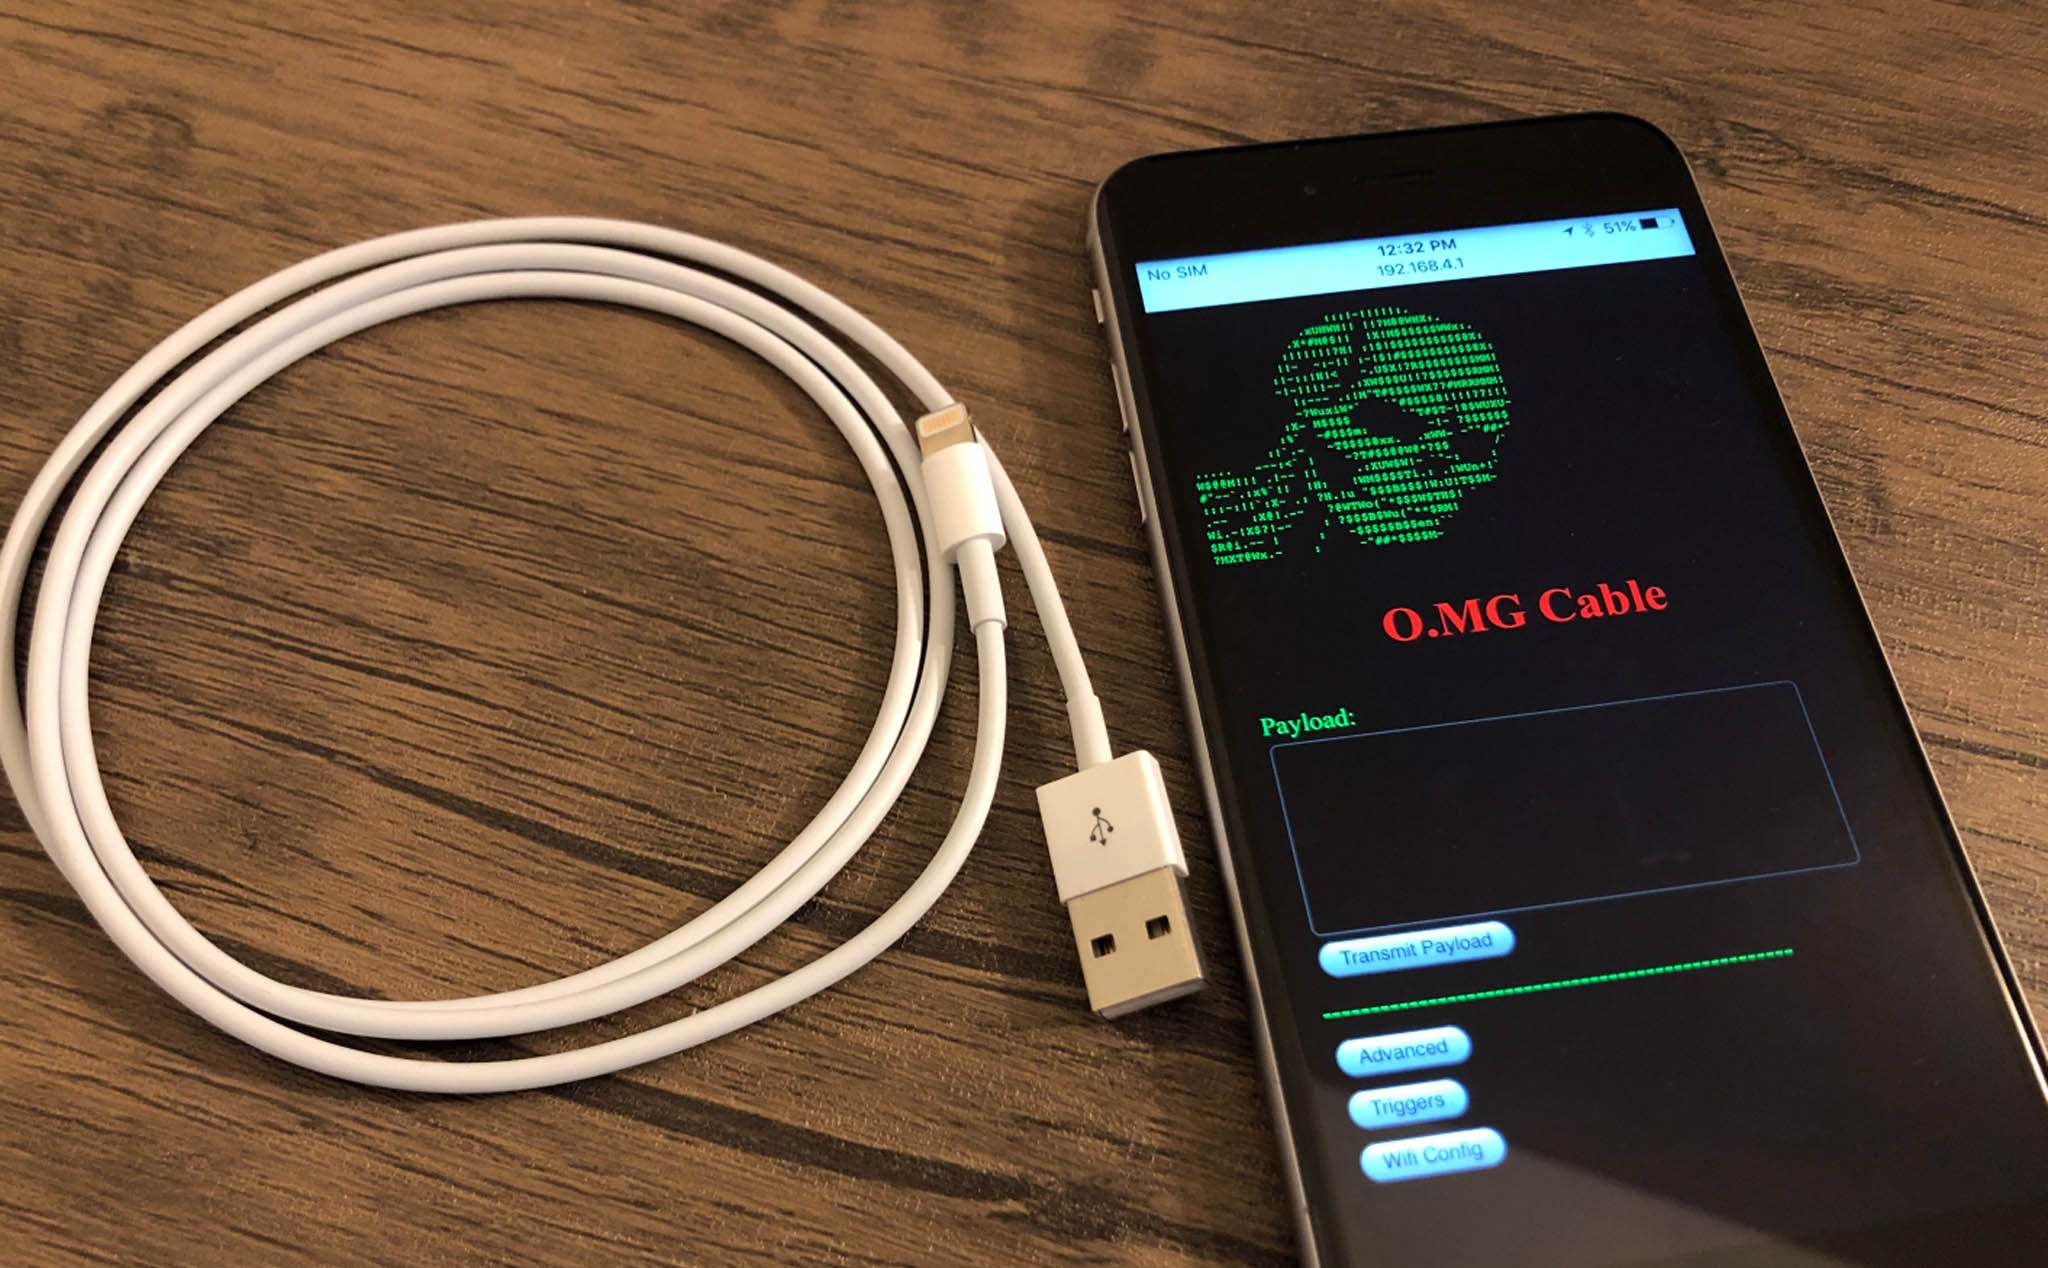 Cáp lightning sạc iPhone được hacker trang bị cả chip WiFi để cài malware vào máy tính